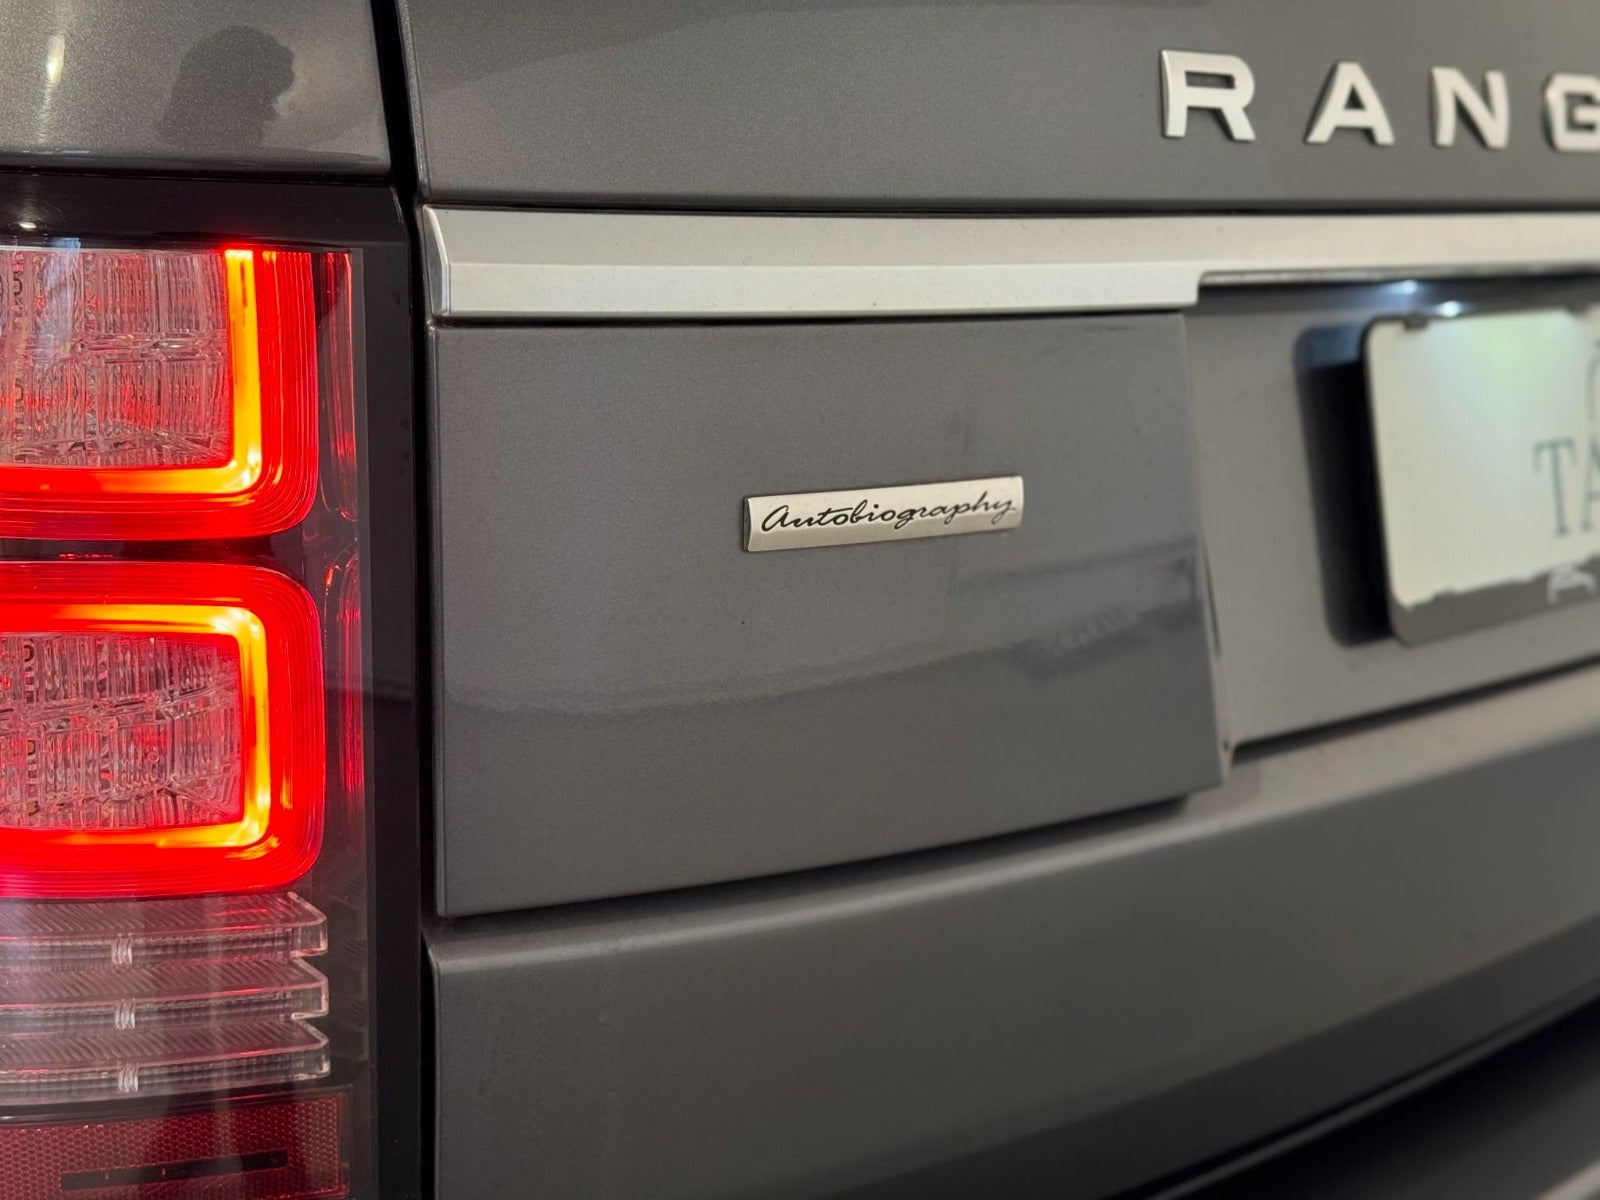 Land Rover – Range Rover